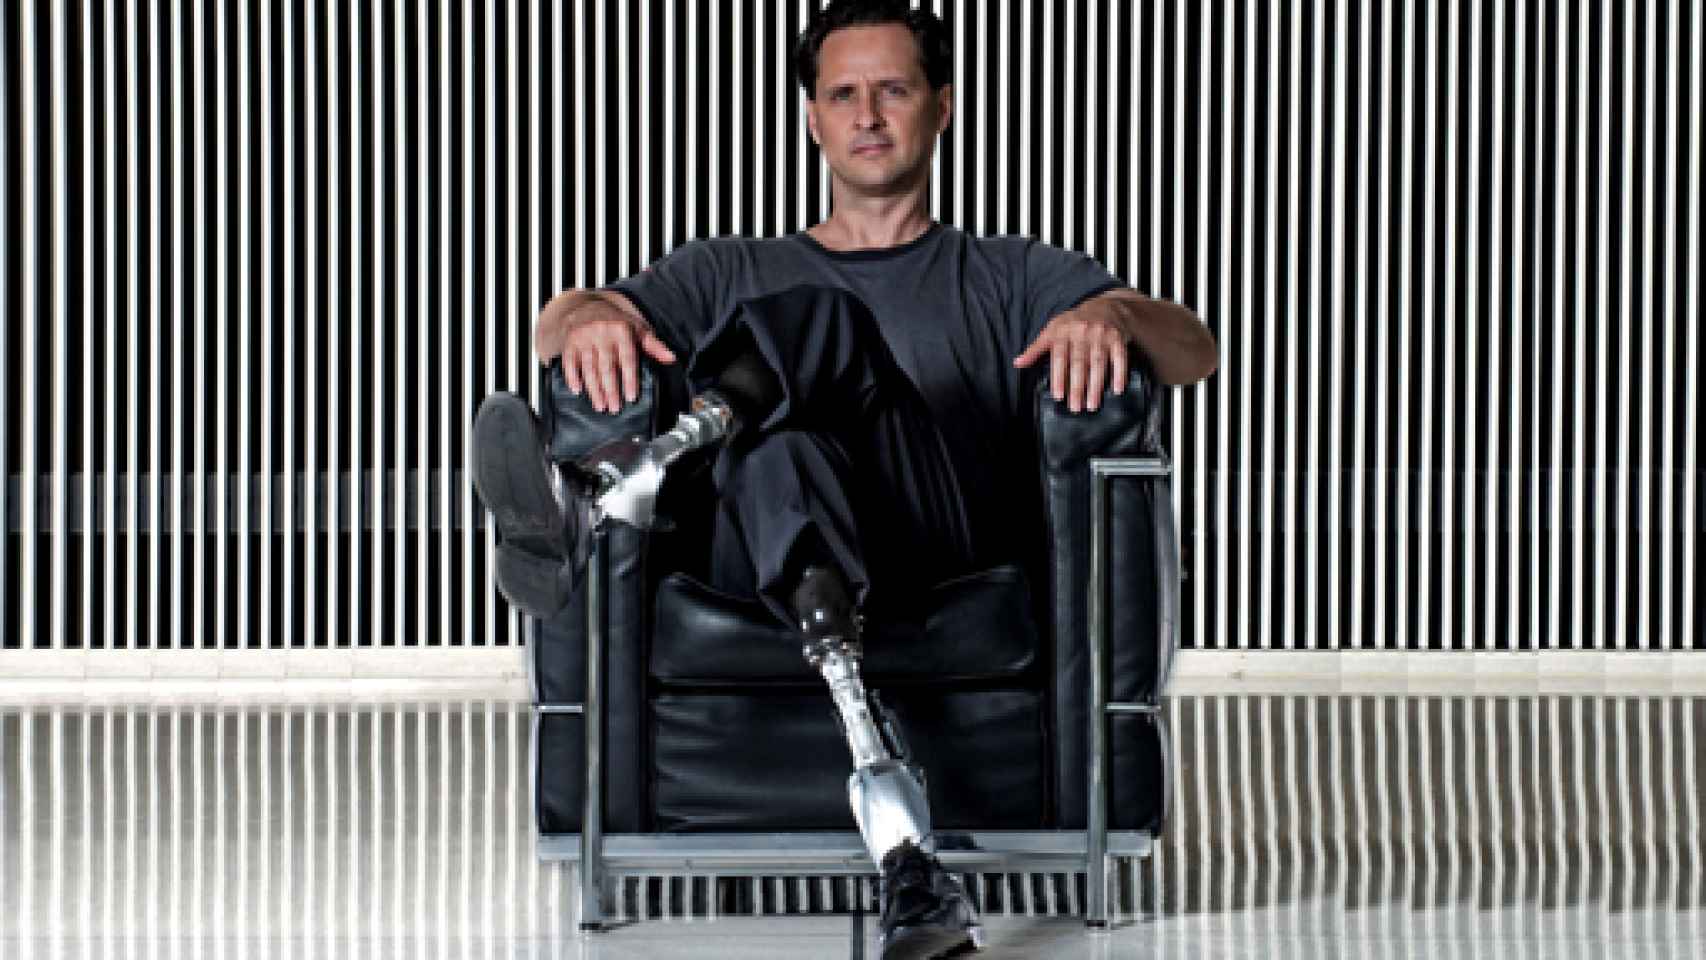 Image: Hugh Herr: La biónica no hará distinción entre biológico y artificial